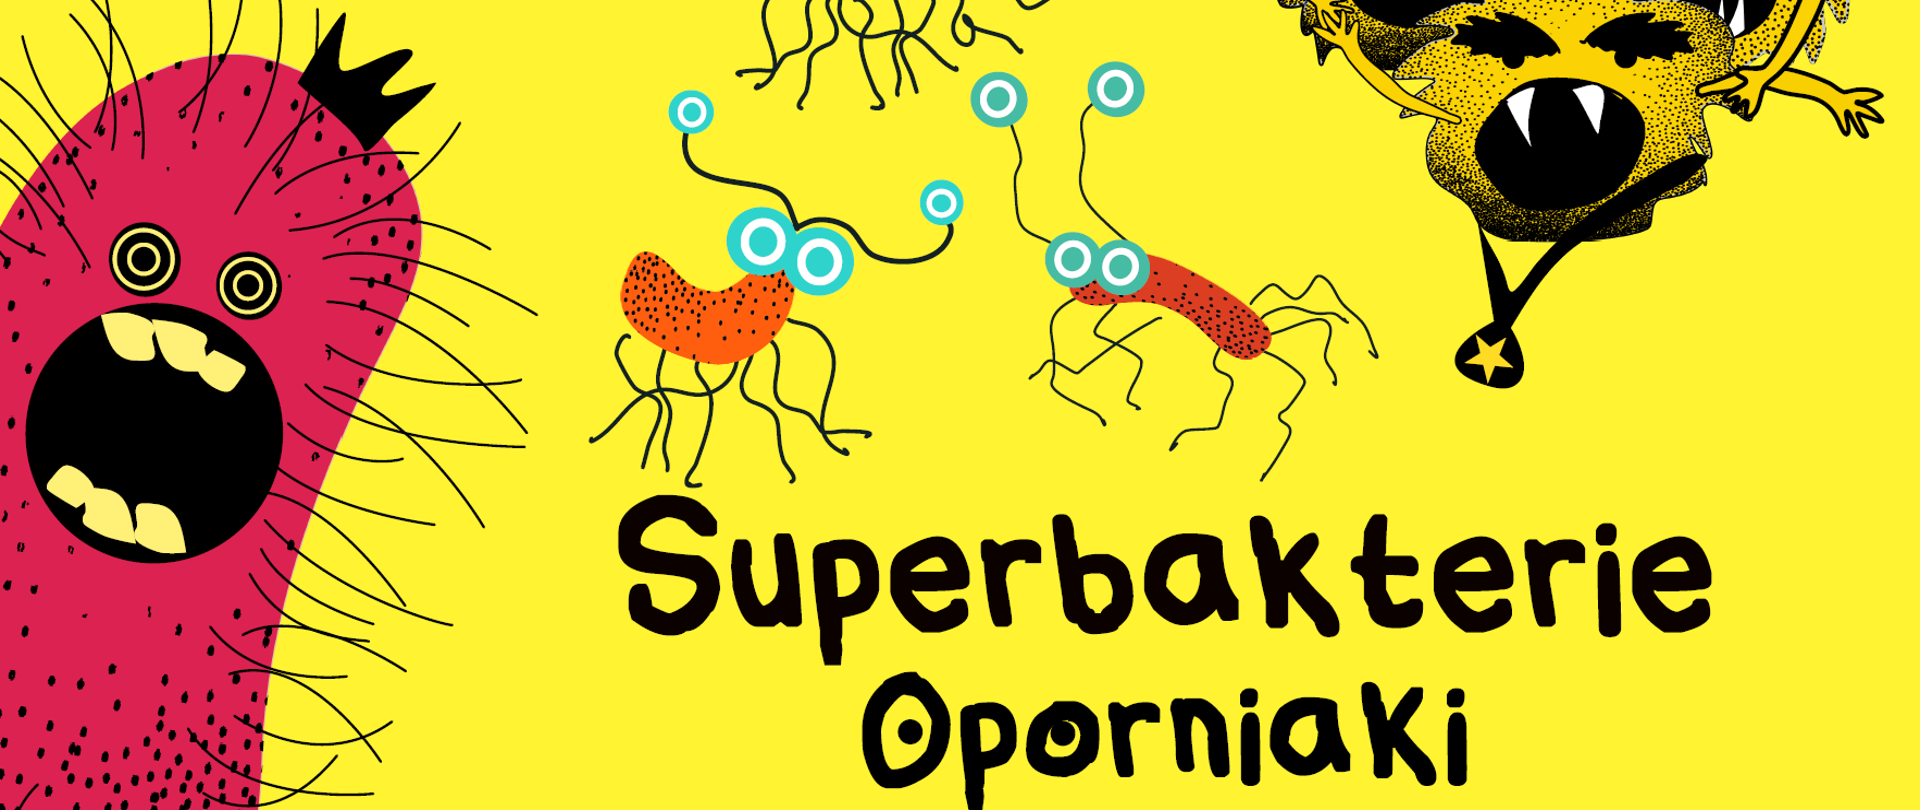 superbakterie